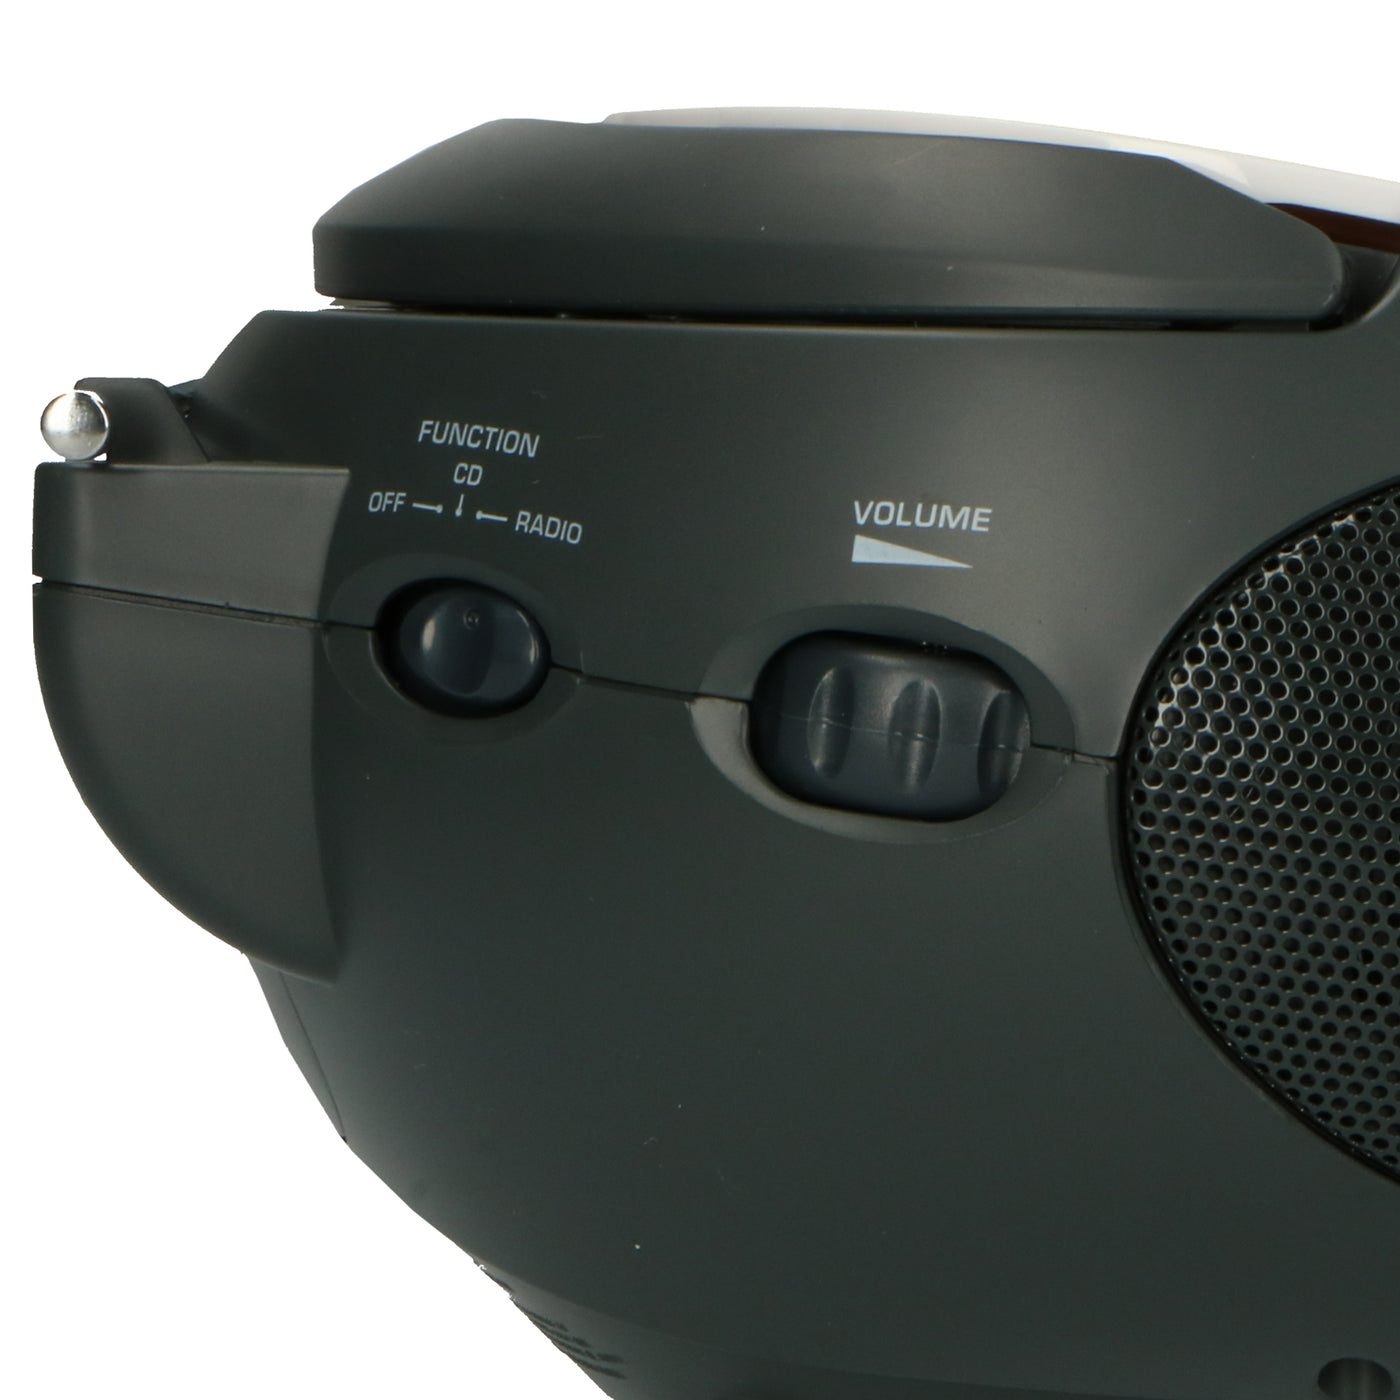 LENCO SCD-24 white - Draagbare stereo FM radio met CD-speler - Wit